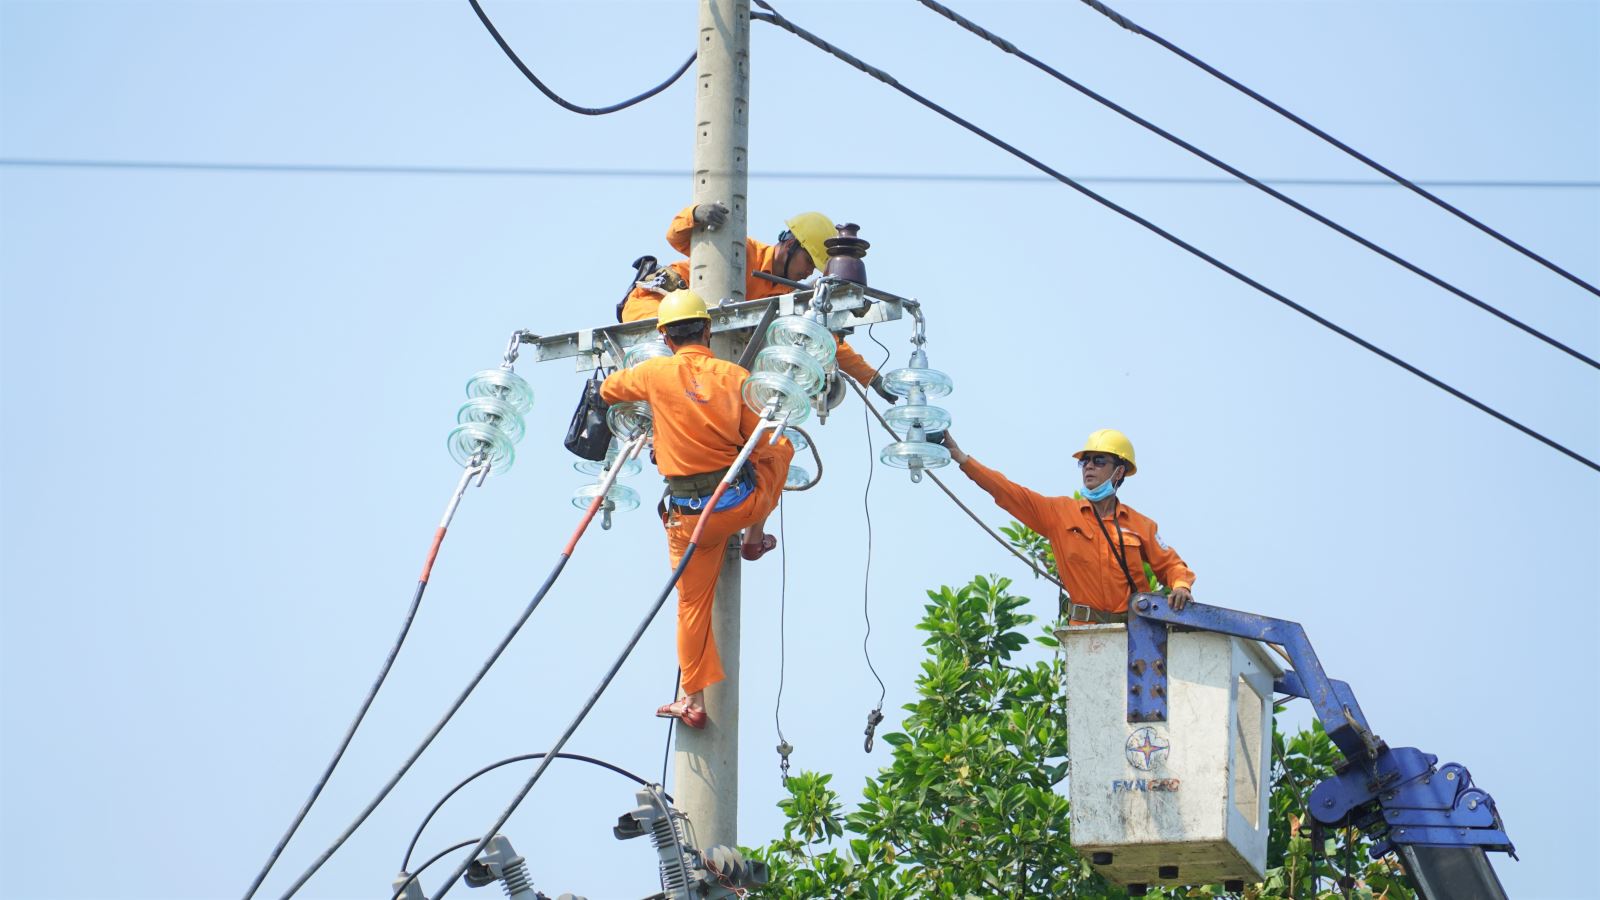 EVNCPC kêu gọi chung tay tiết kiệm điện trong mùa nắng nóng - Ảnh 1.